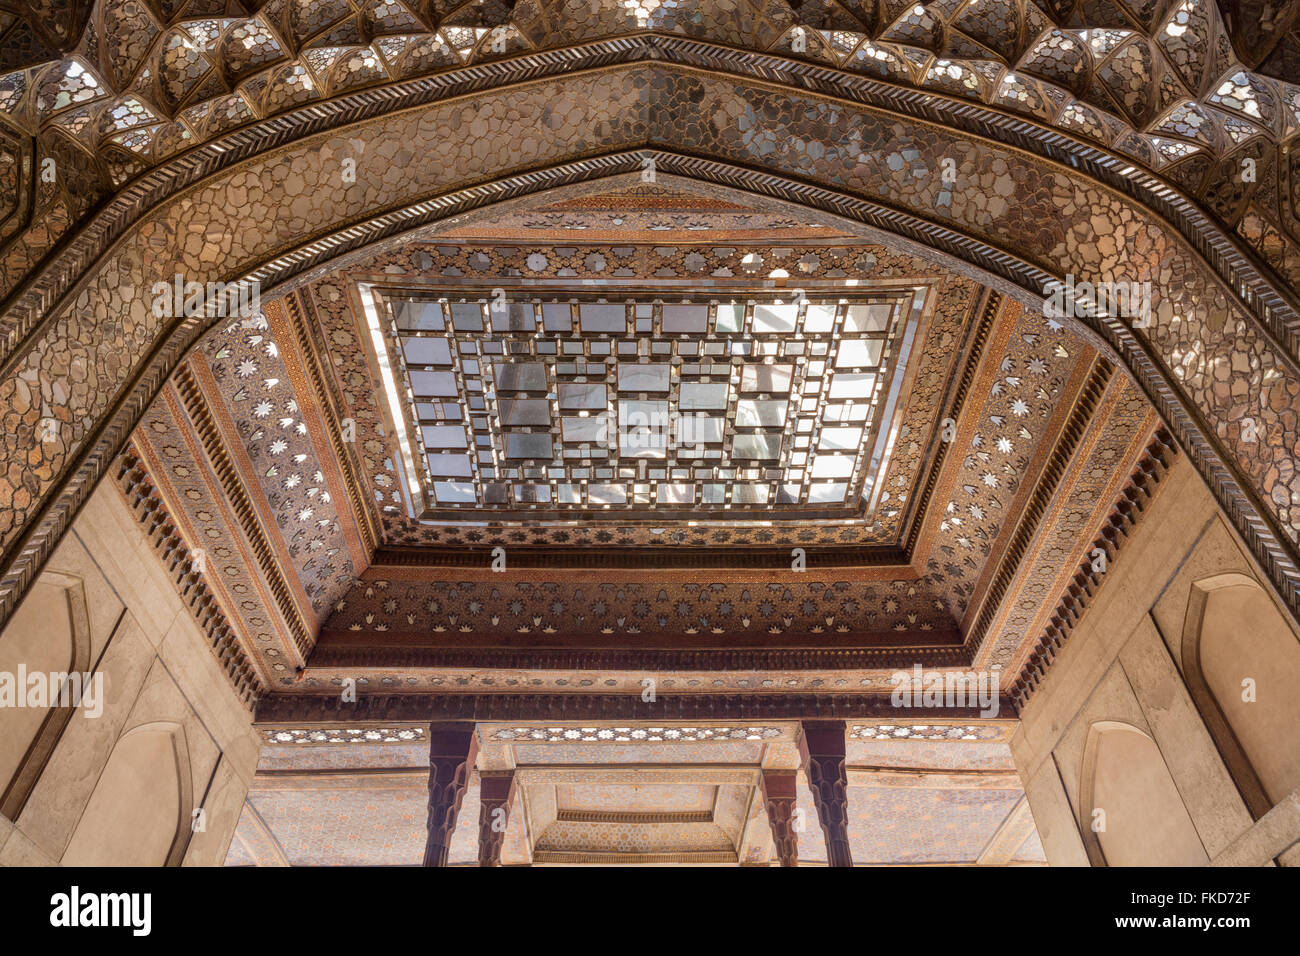 Dettaglio del tetto di talari e specchio di Safavid lavorare al XVII secolo Chehel Sotun pavilion, Isfahan, Iran Foto Stock